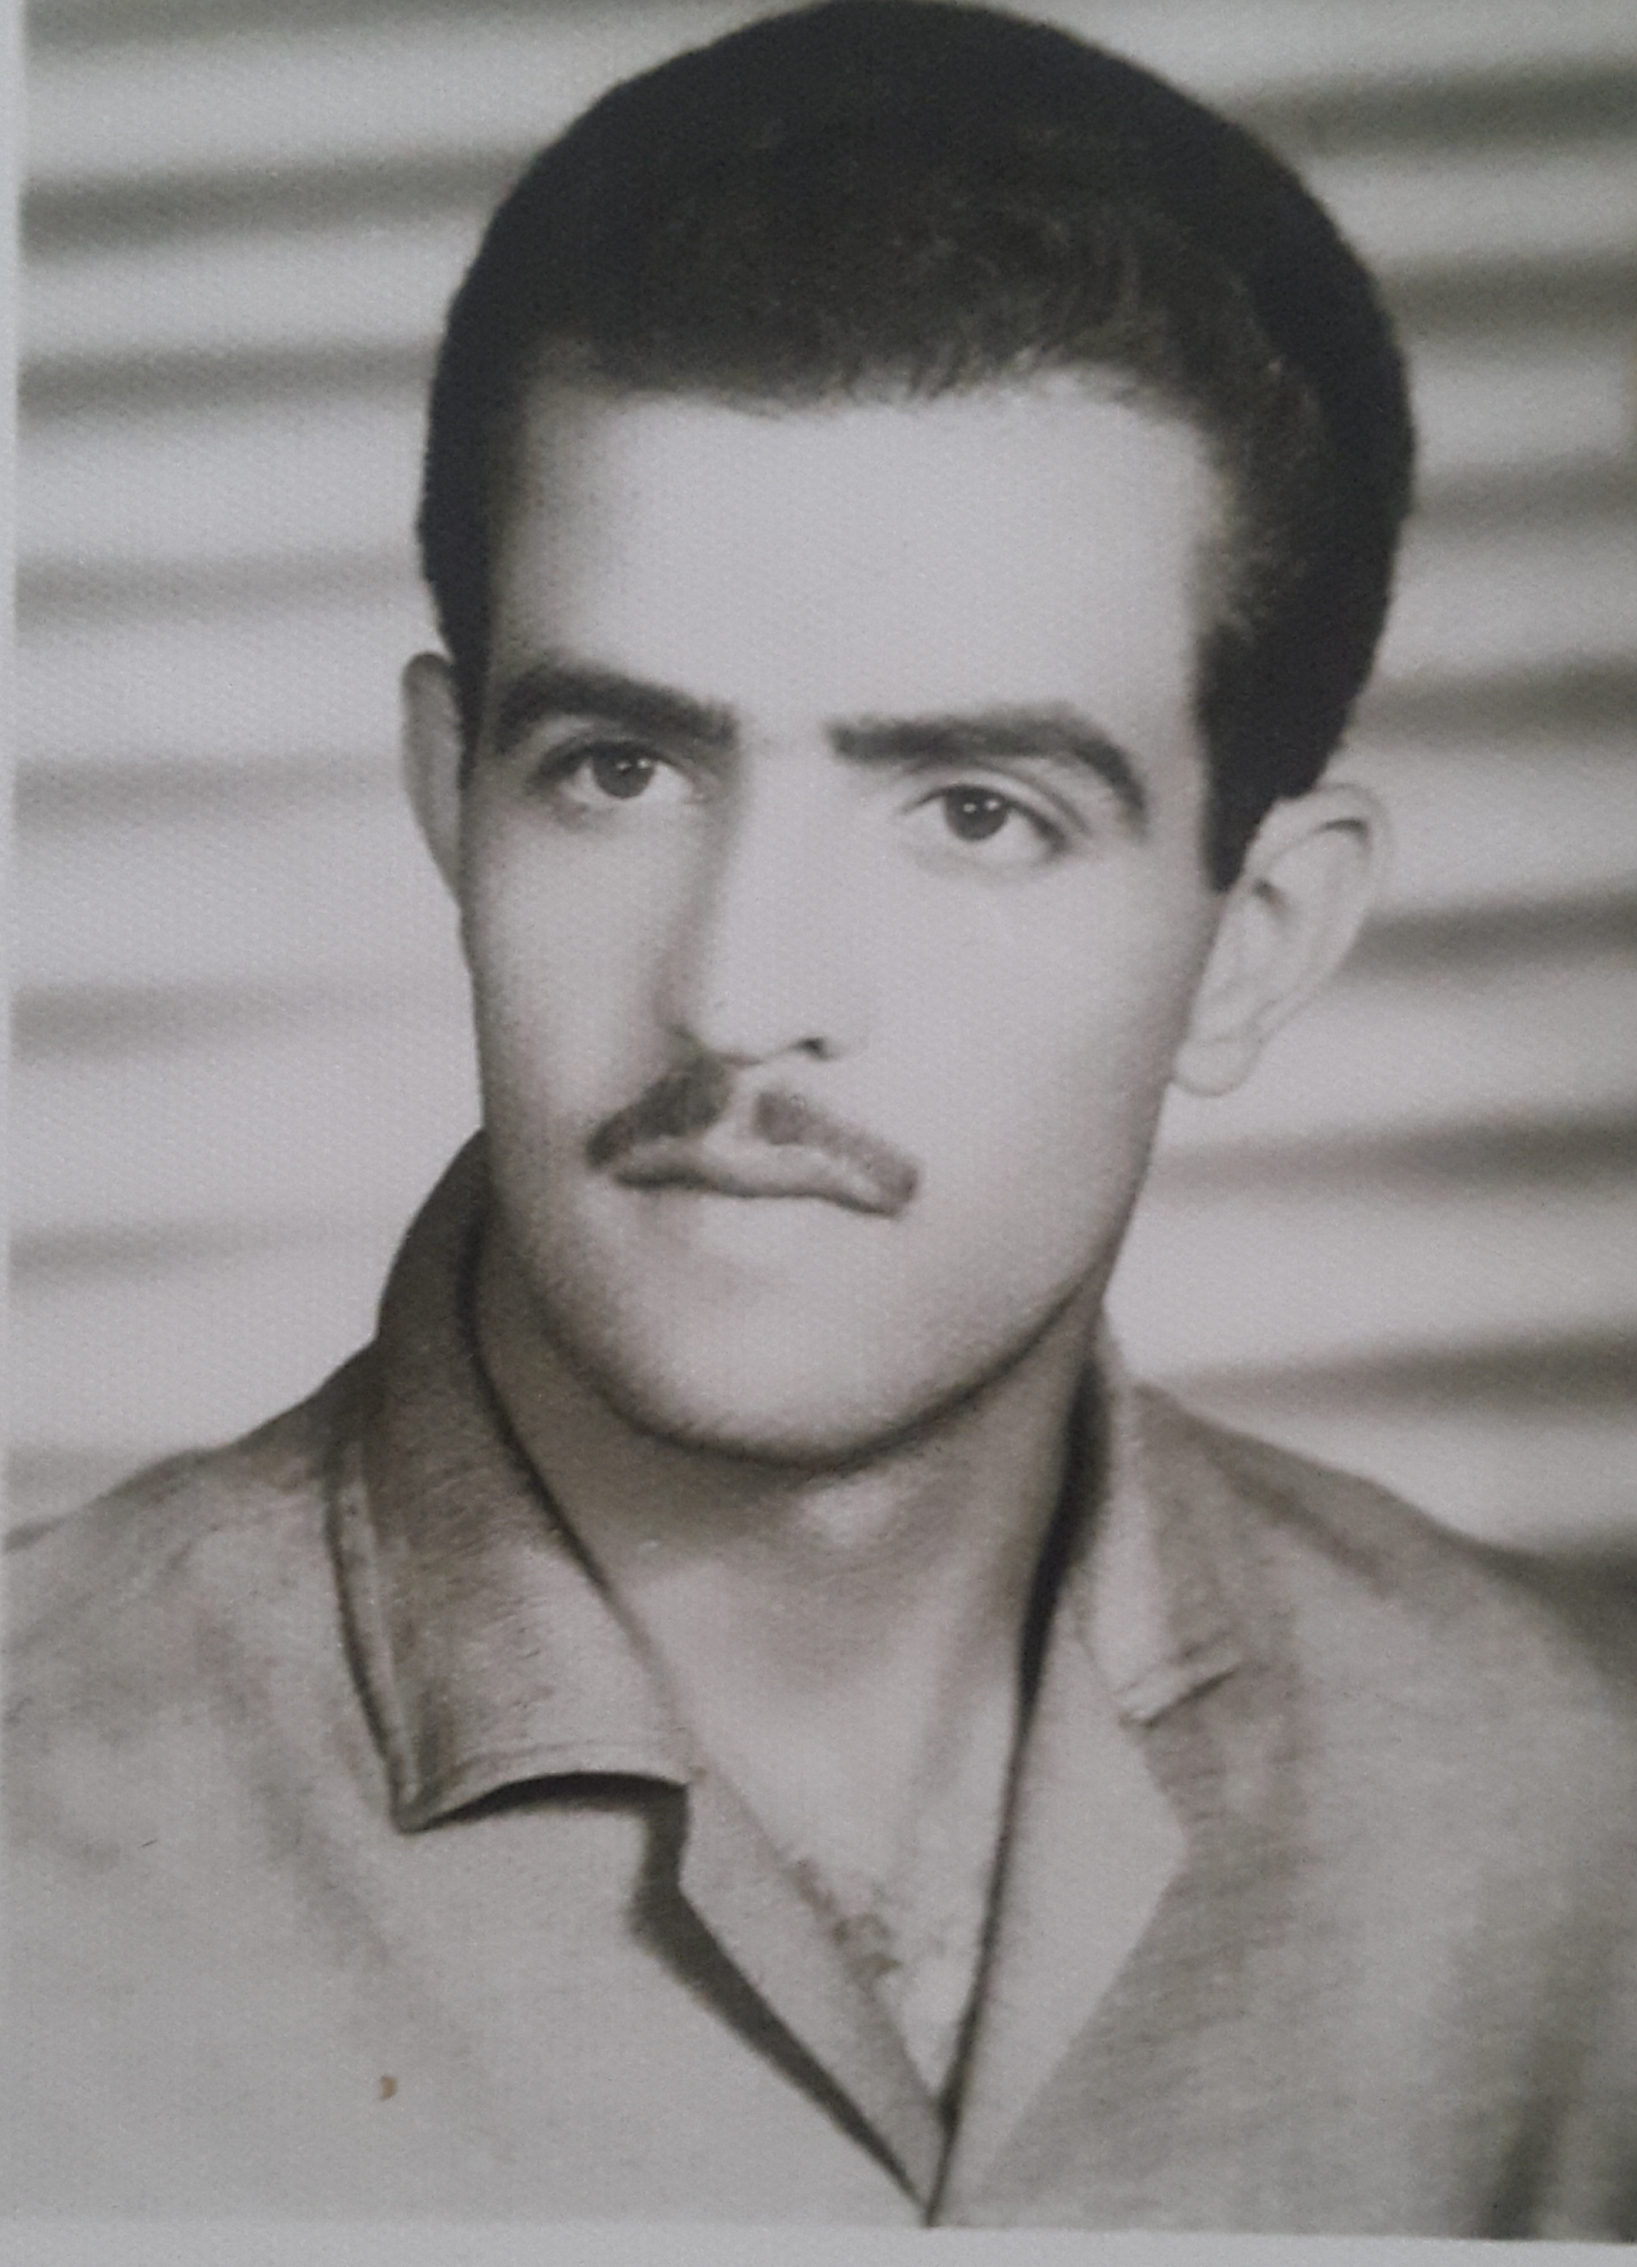 پدر مهربانم که همیشه یادش در خاطر ما هست سید محمود اسماعیل نژاد